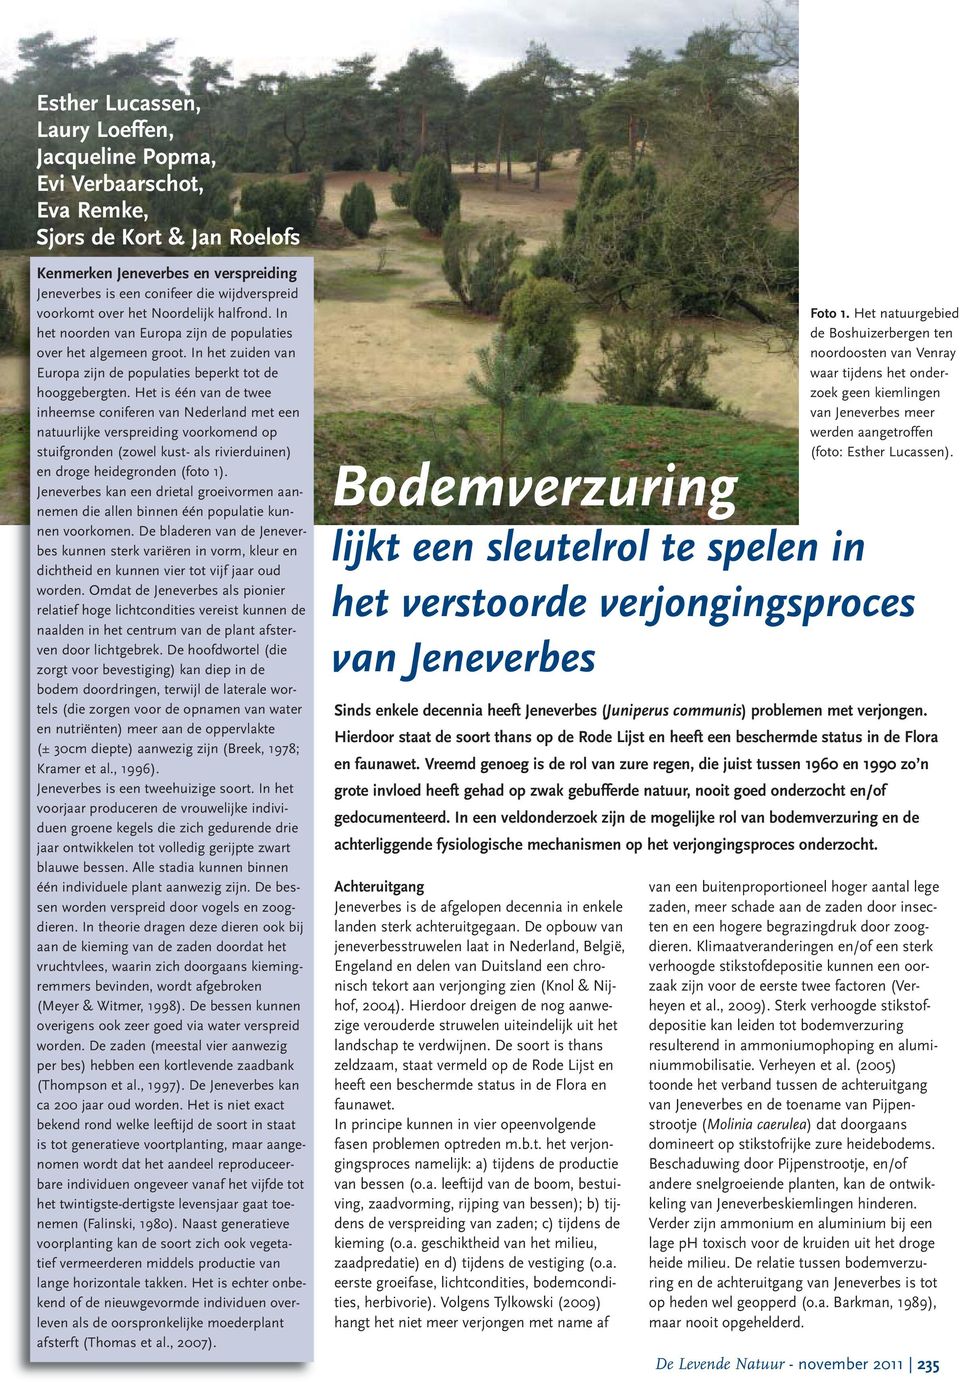 Het is één van de twee inheemse coniferen van Nederland met een natuurlijke verspreiding voorkomend op stuifgronden (zowel kust- als rivierduinen) en droge heidegronden (foto 1).